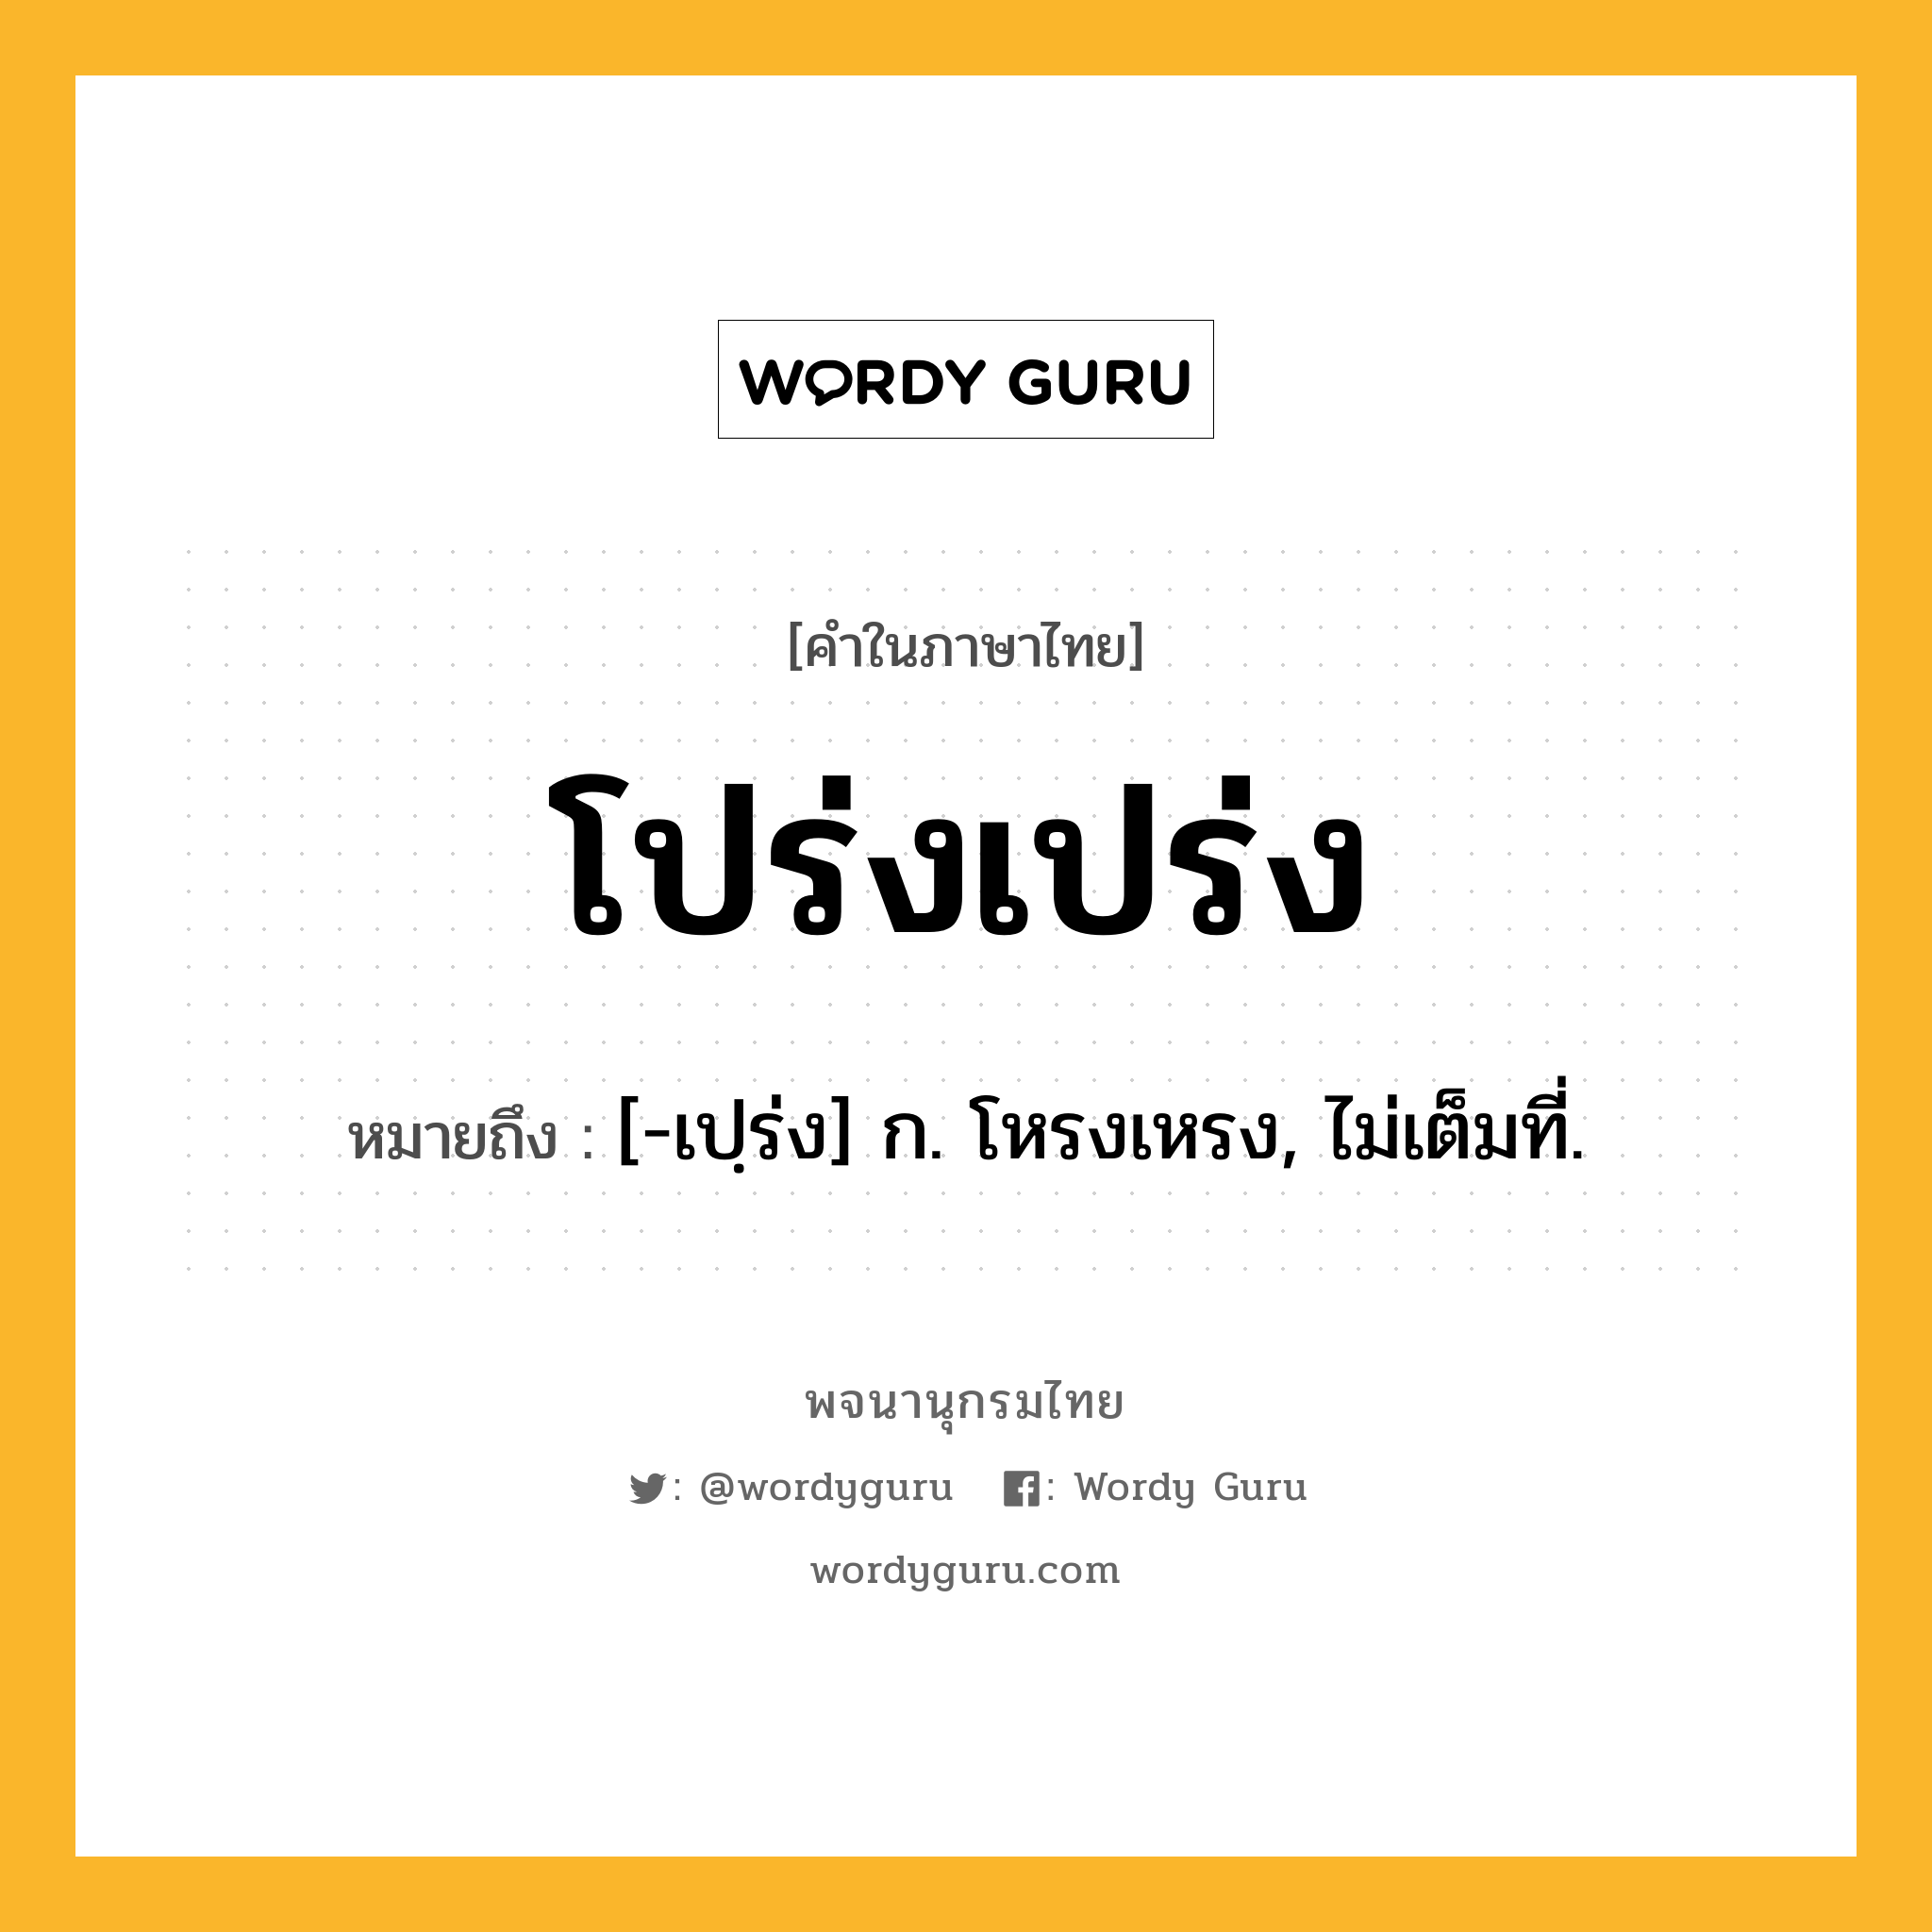 โปร่งเปร่ง ความหมาย หมายถึงอะไร?, คำในภาษาไทย โปร่งเปร่ง หมายถึง [-เปฺร่ง] ก. โหรงเหรง, ไม่เต็มที่.